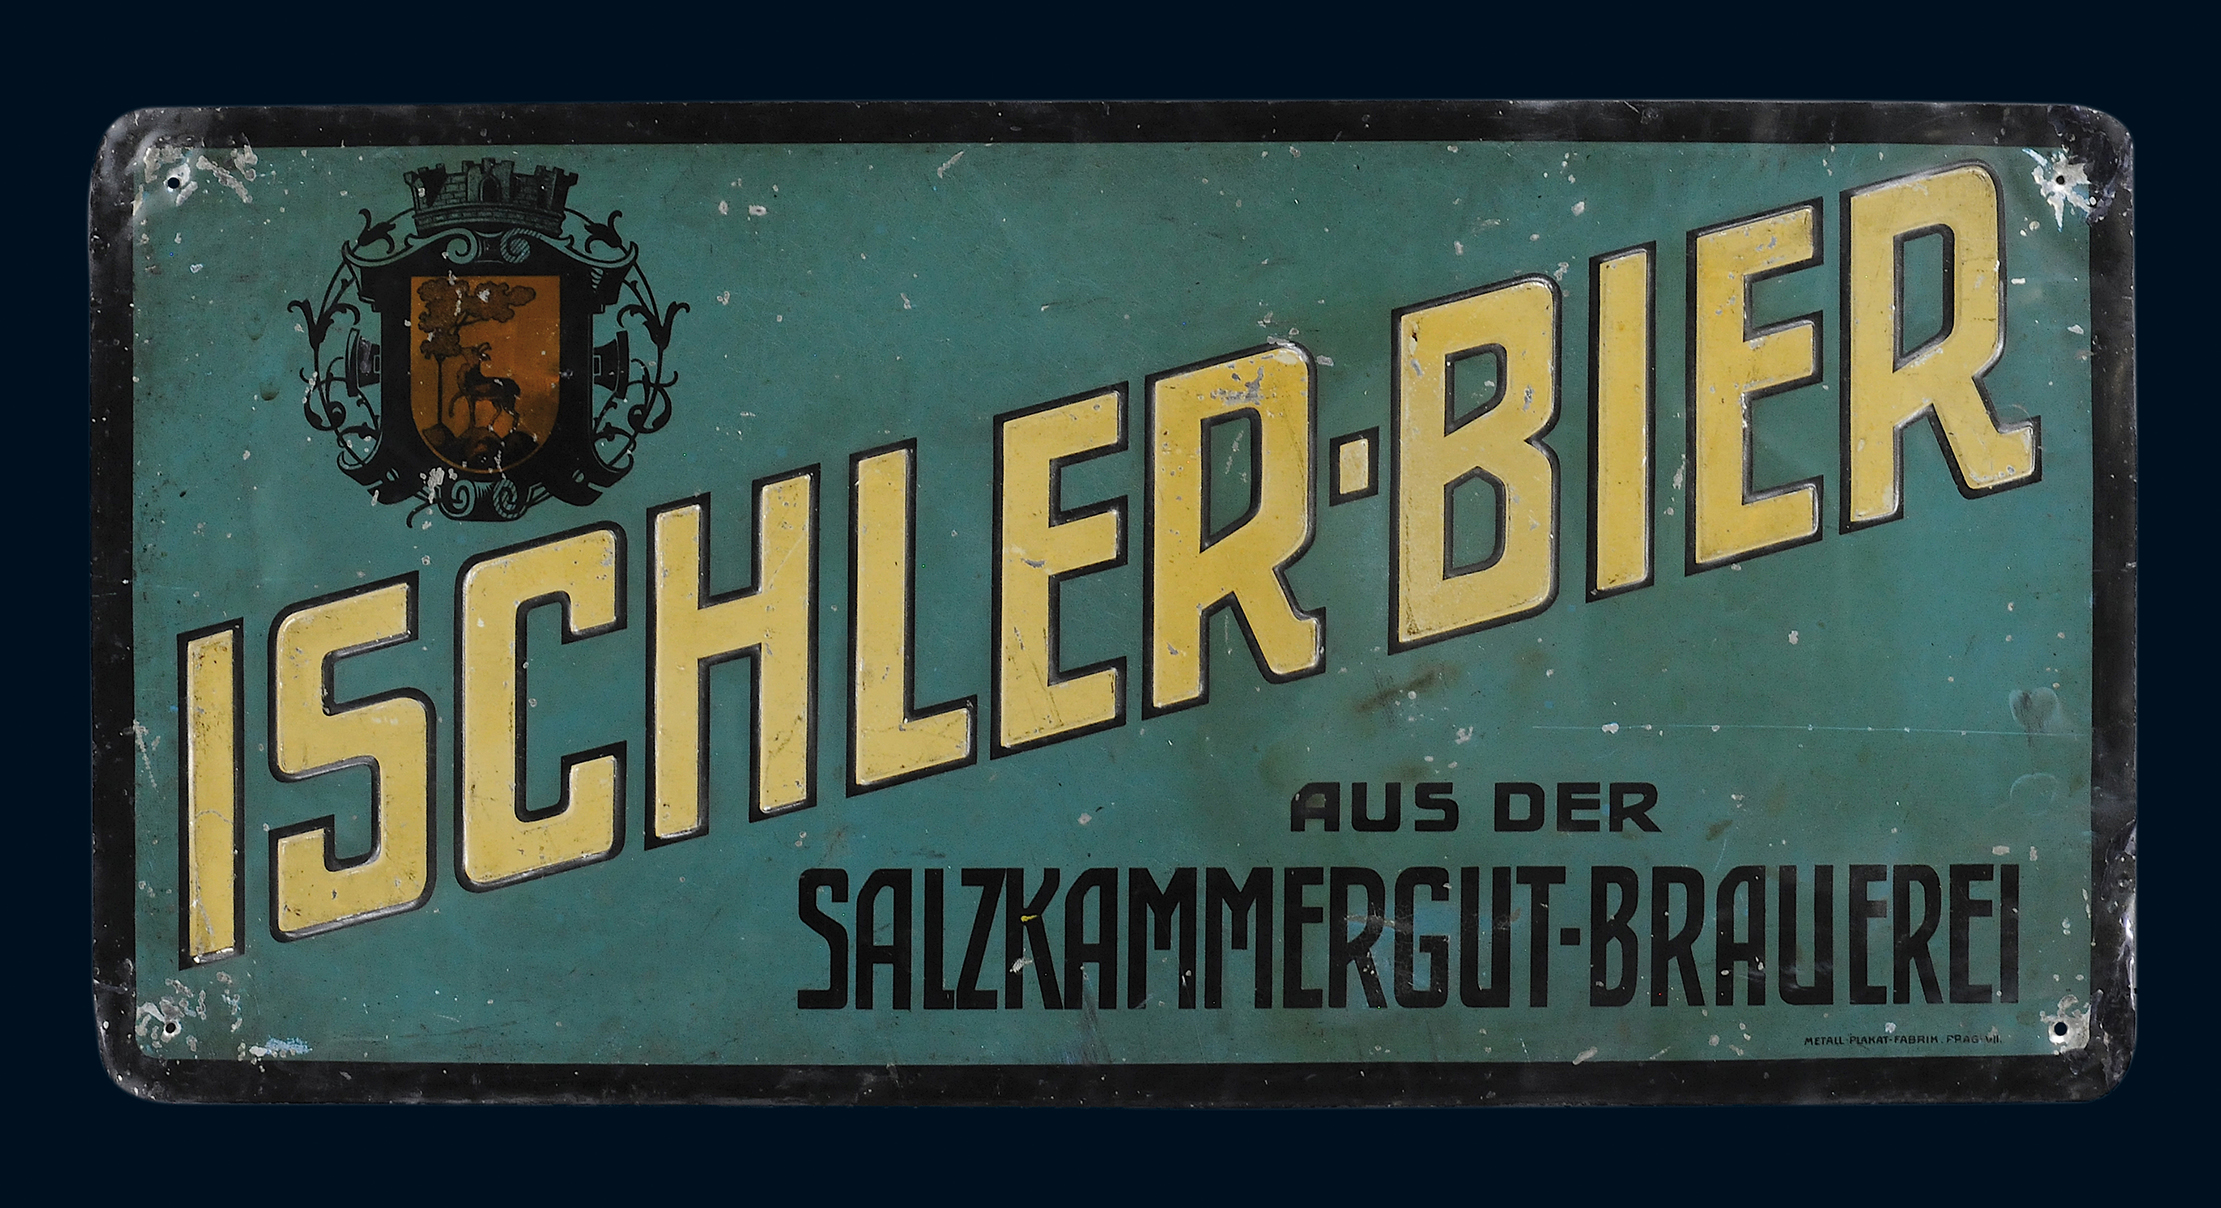 Ischler-Bier aus der Salzkammergut Brauerei